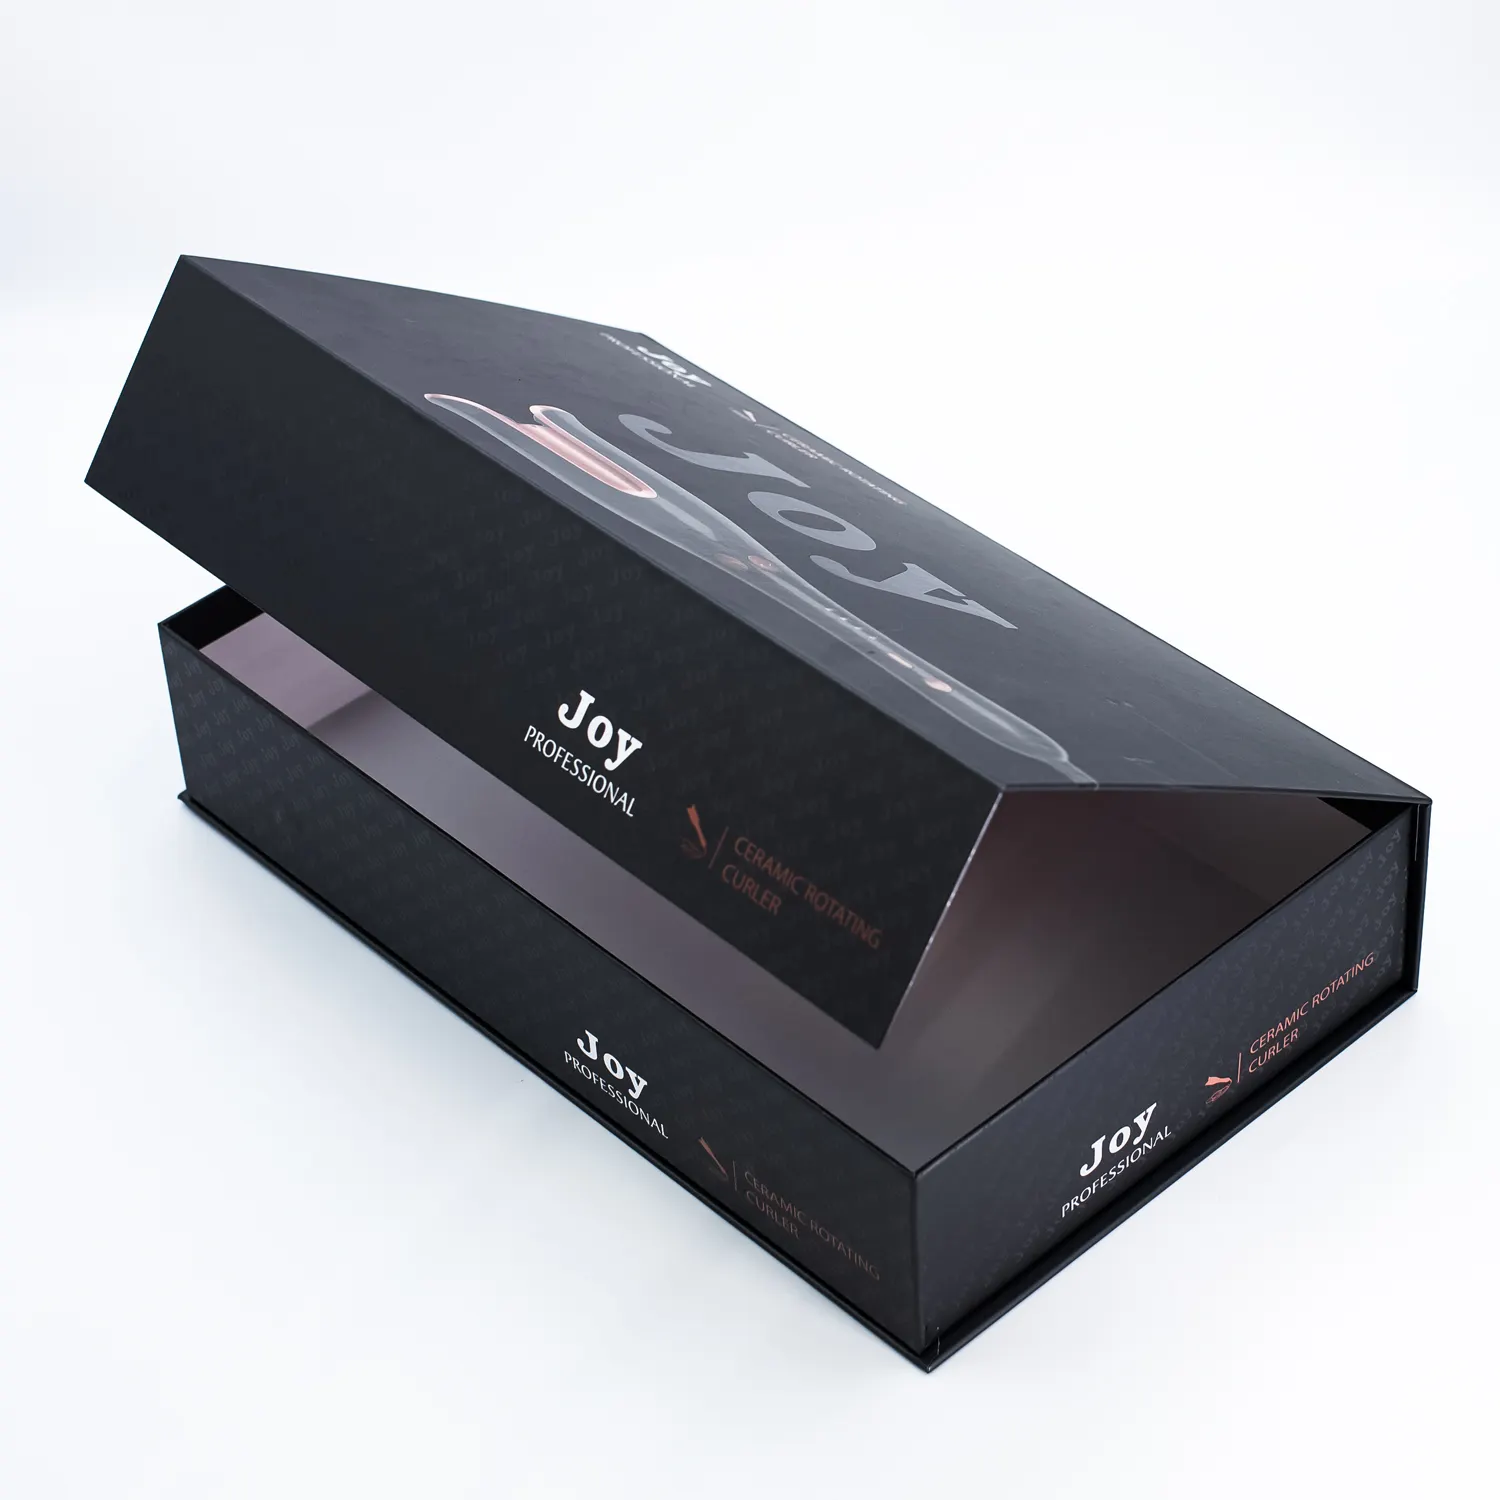 กล่องของขวัญแม่เหล็กกระดาษแข็งขนาดใหญ่พิเศษขนาดใหญ่พิมพ์สีหรูหราออกแบบโลโก้ได้ตามต้องการ ISO9001